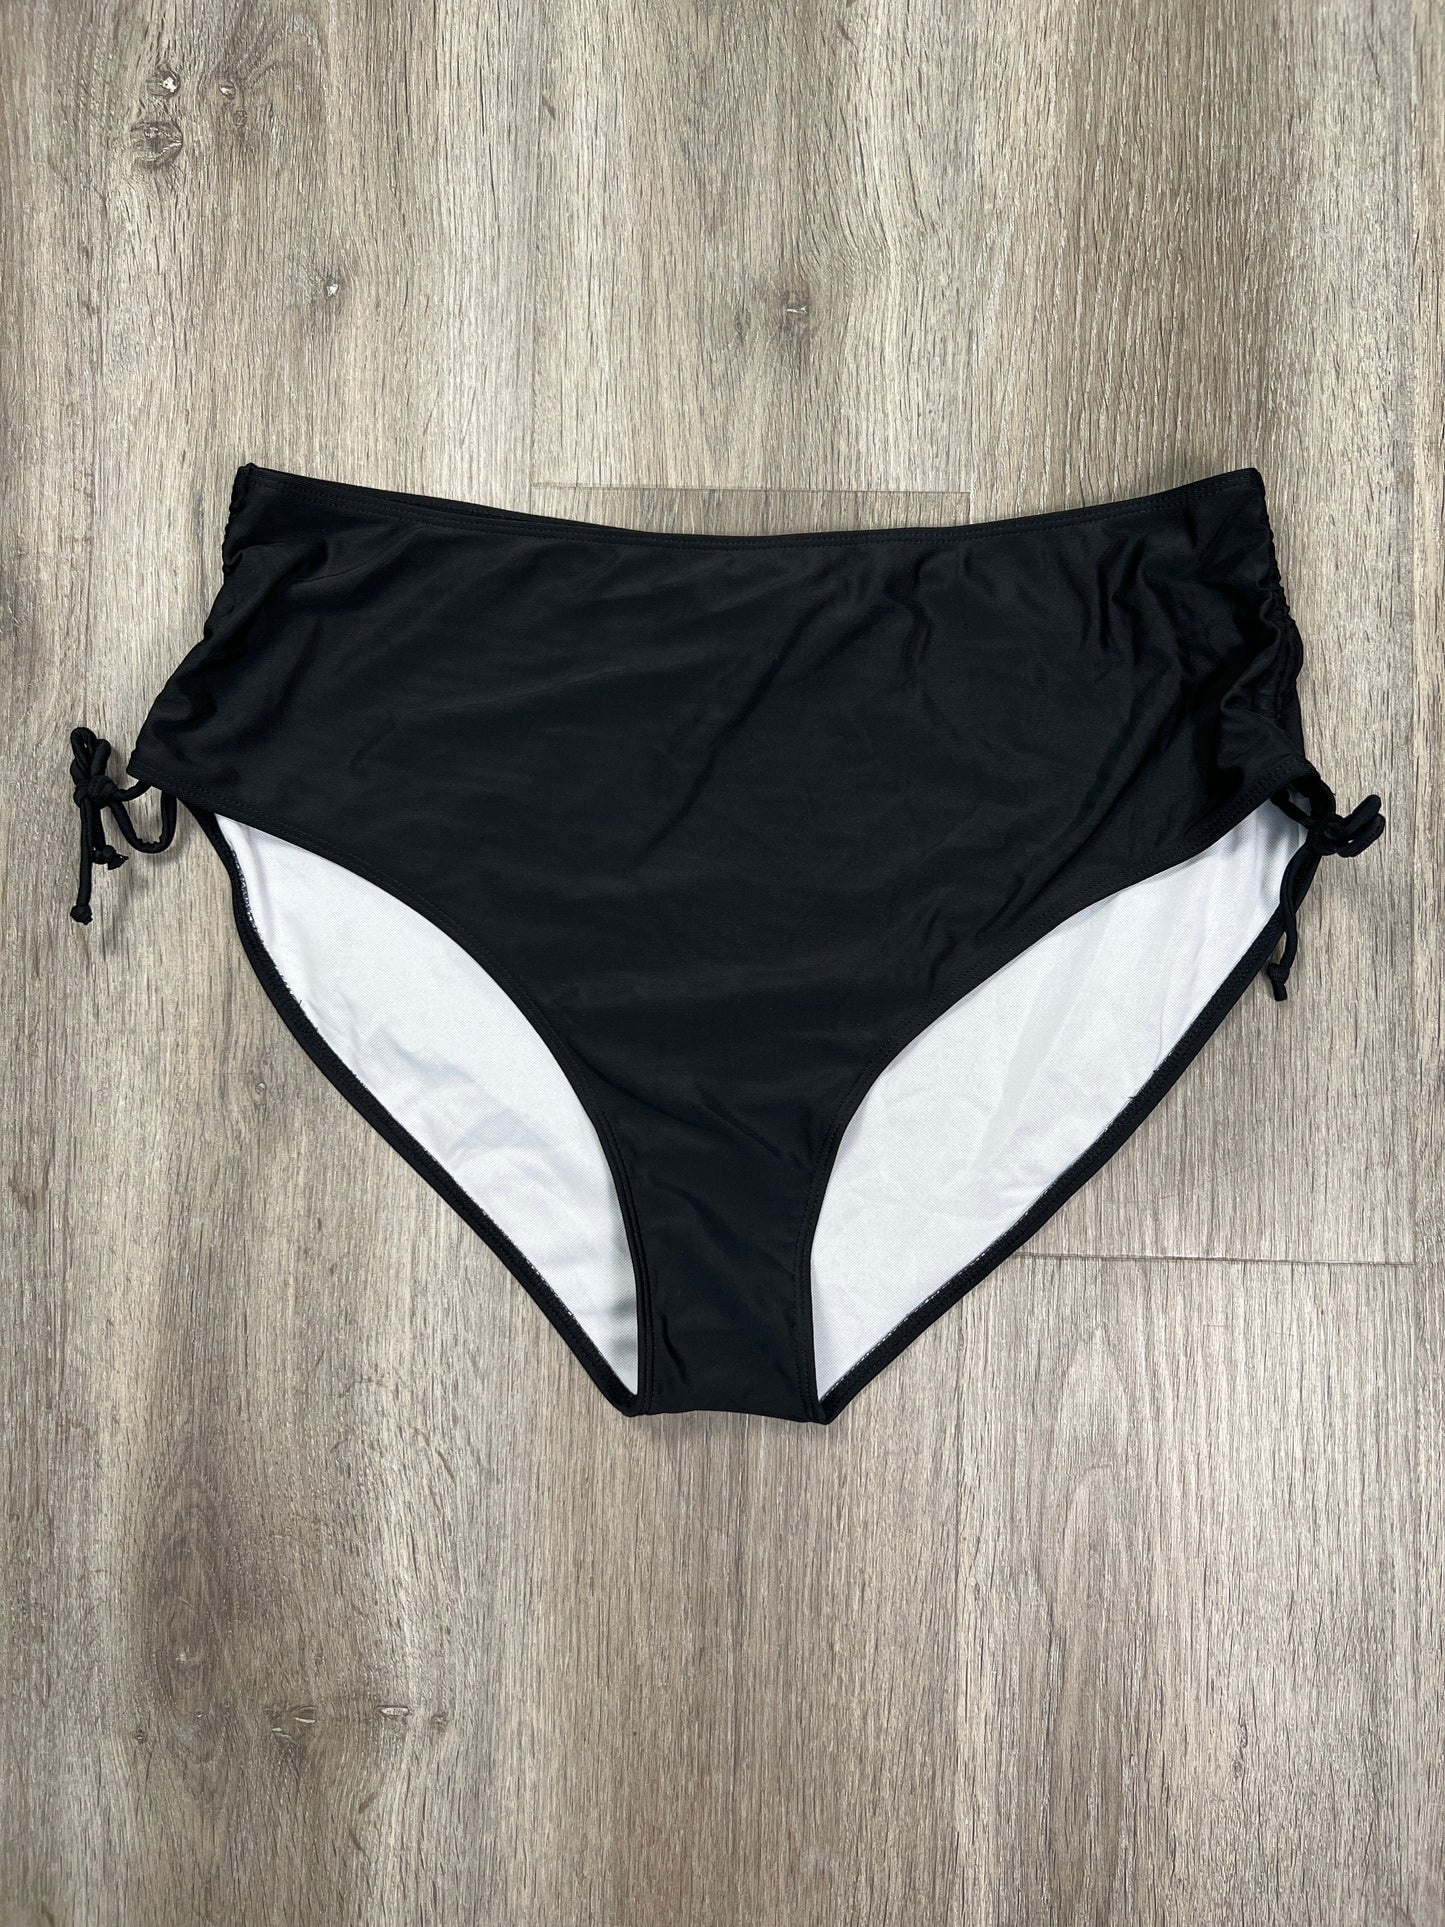 Black Swimsuit Bottom Shein, Size 3x